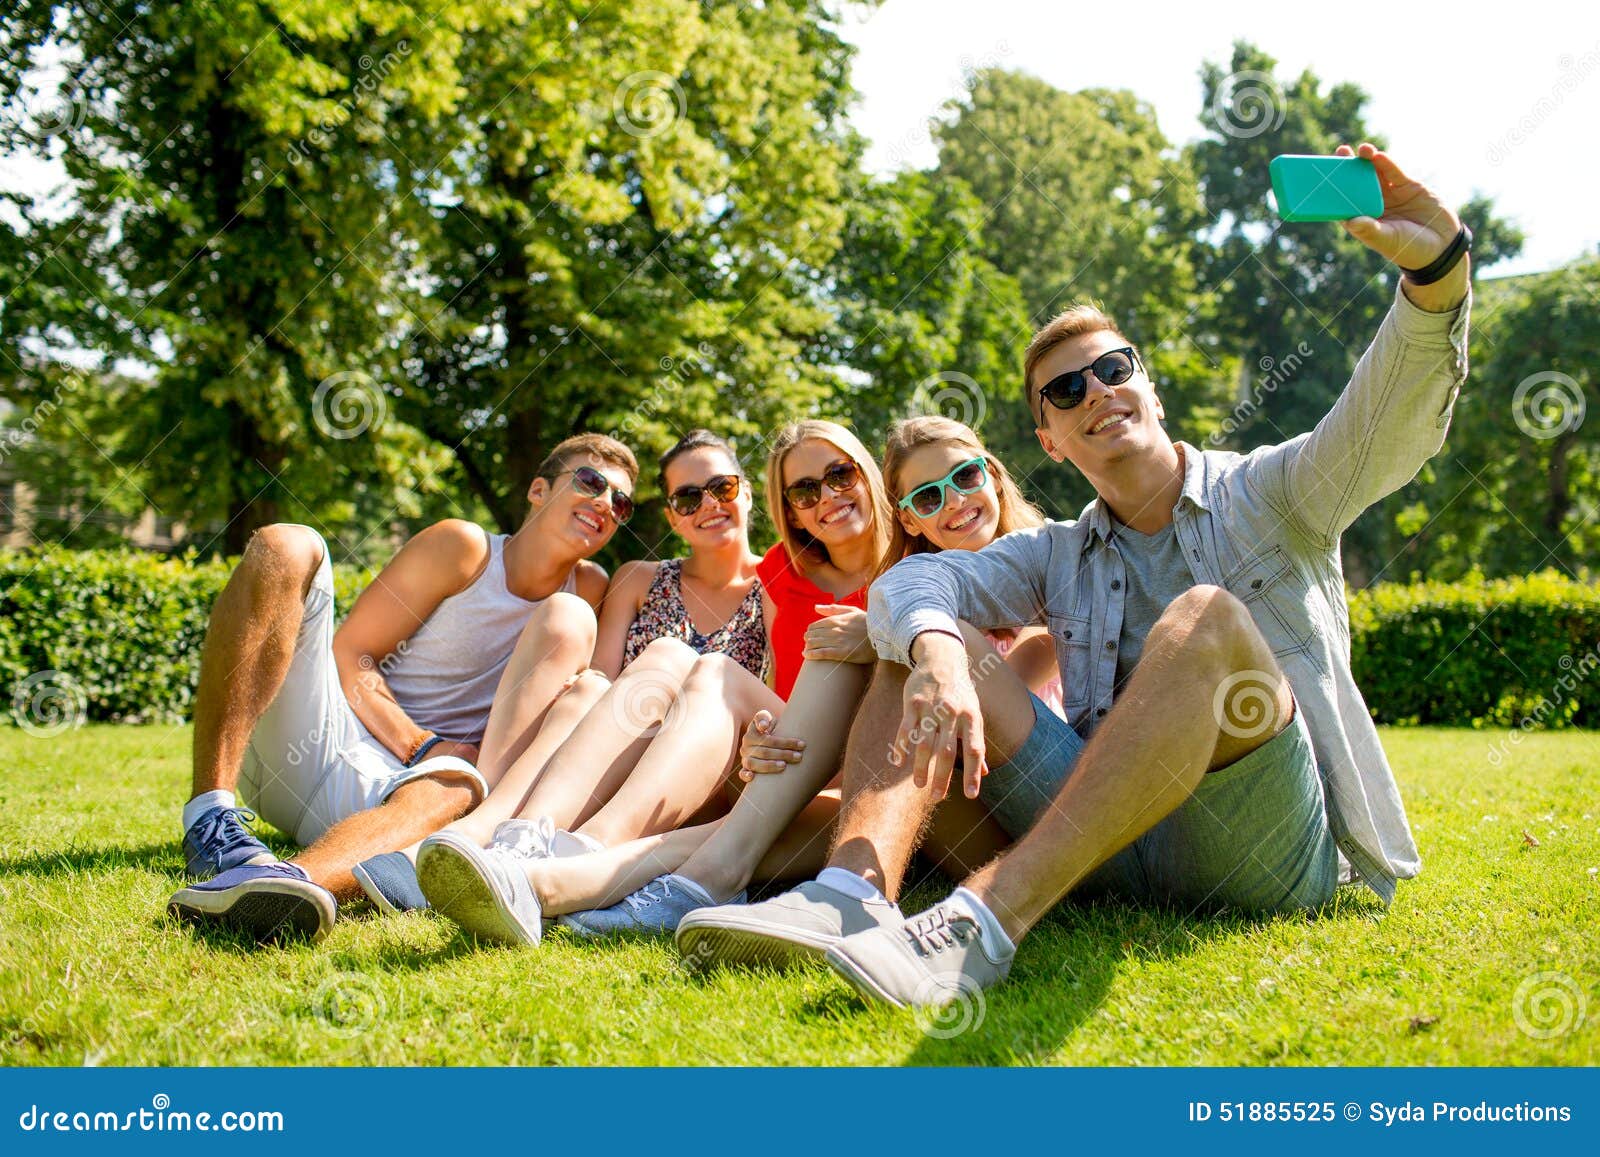 День студенты отдыхают. Группа людей в парке на траве. Студенты на траве. Студенты на газоне. Селфи в парке.